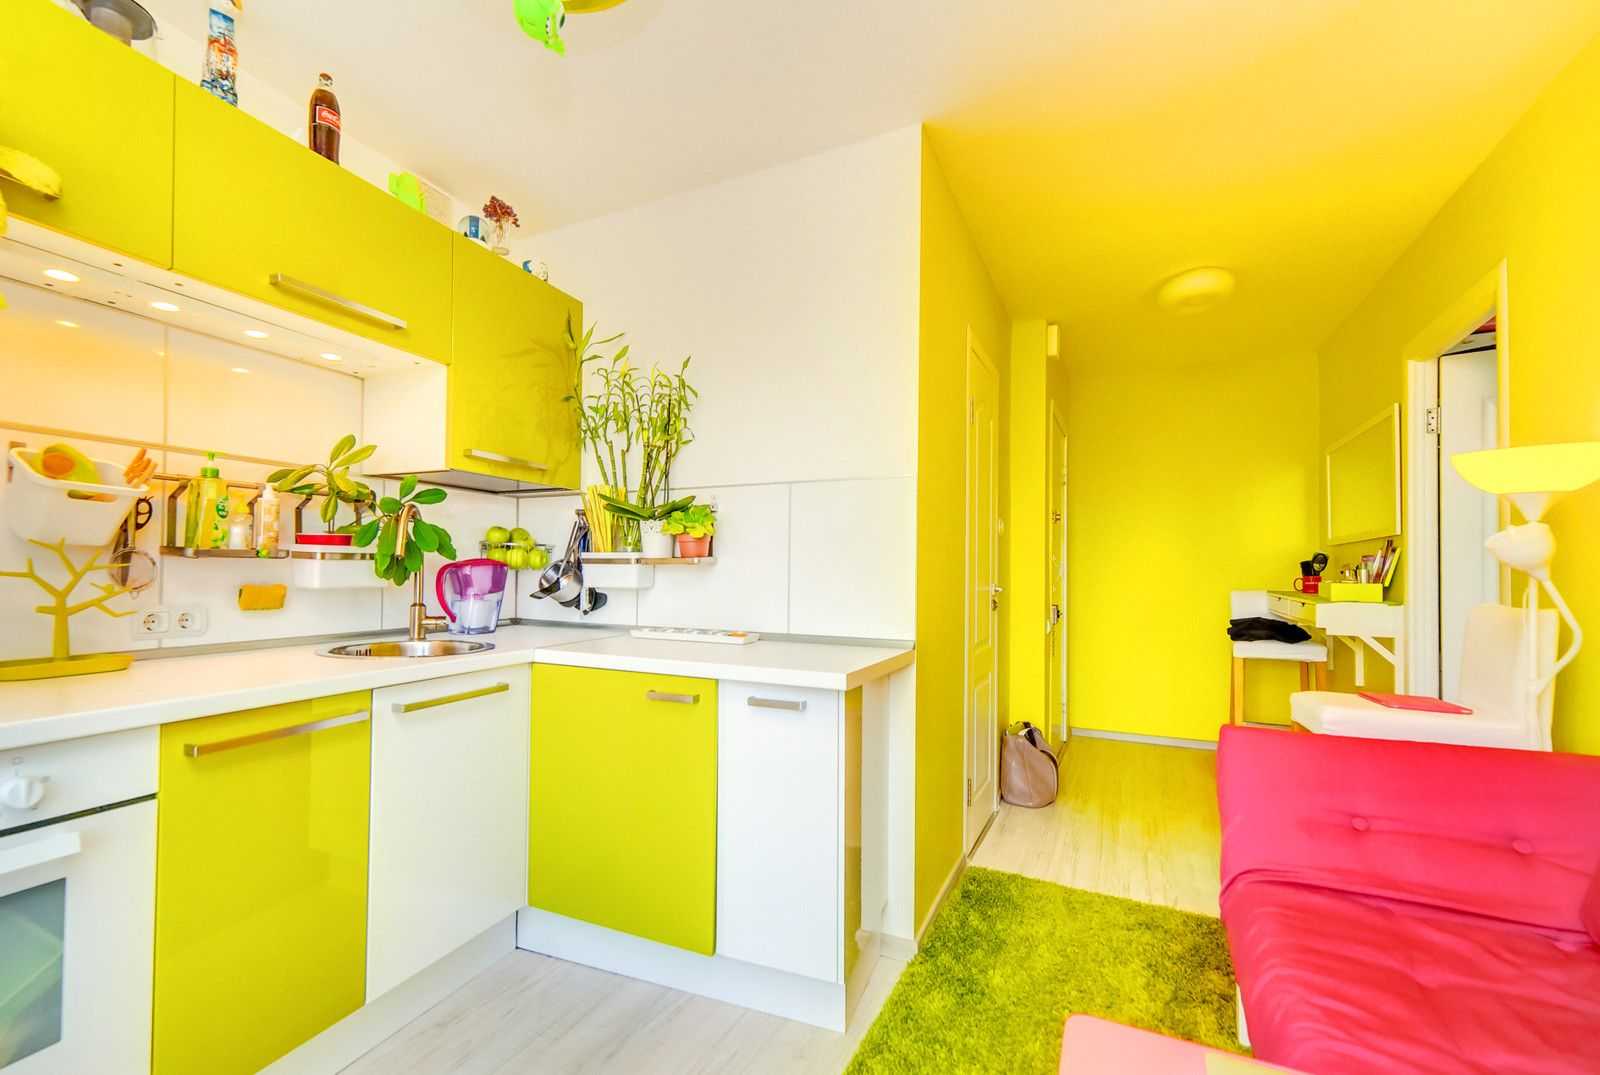 Сочетание цветов в интерьере кухни (45 фото): цветовая гамма гарнитуров, стен и других покрытий, видео и фото